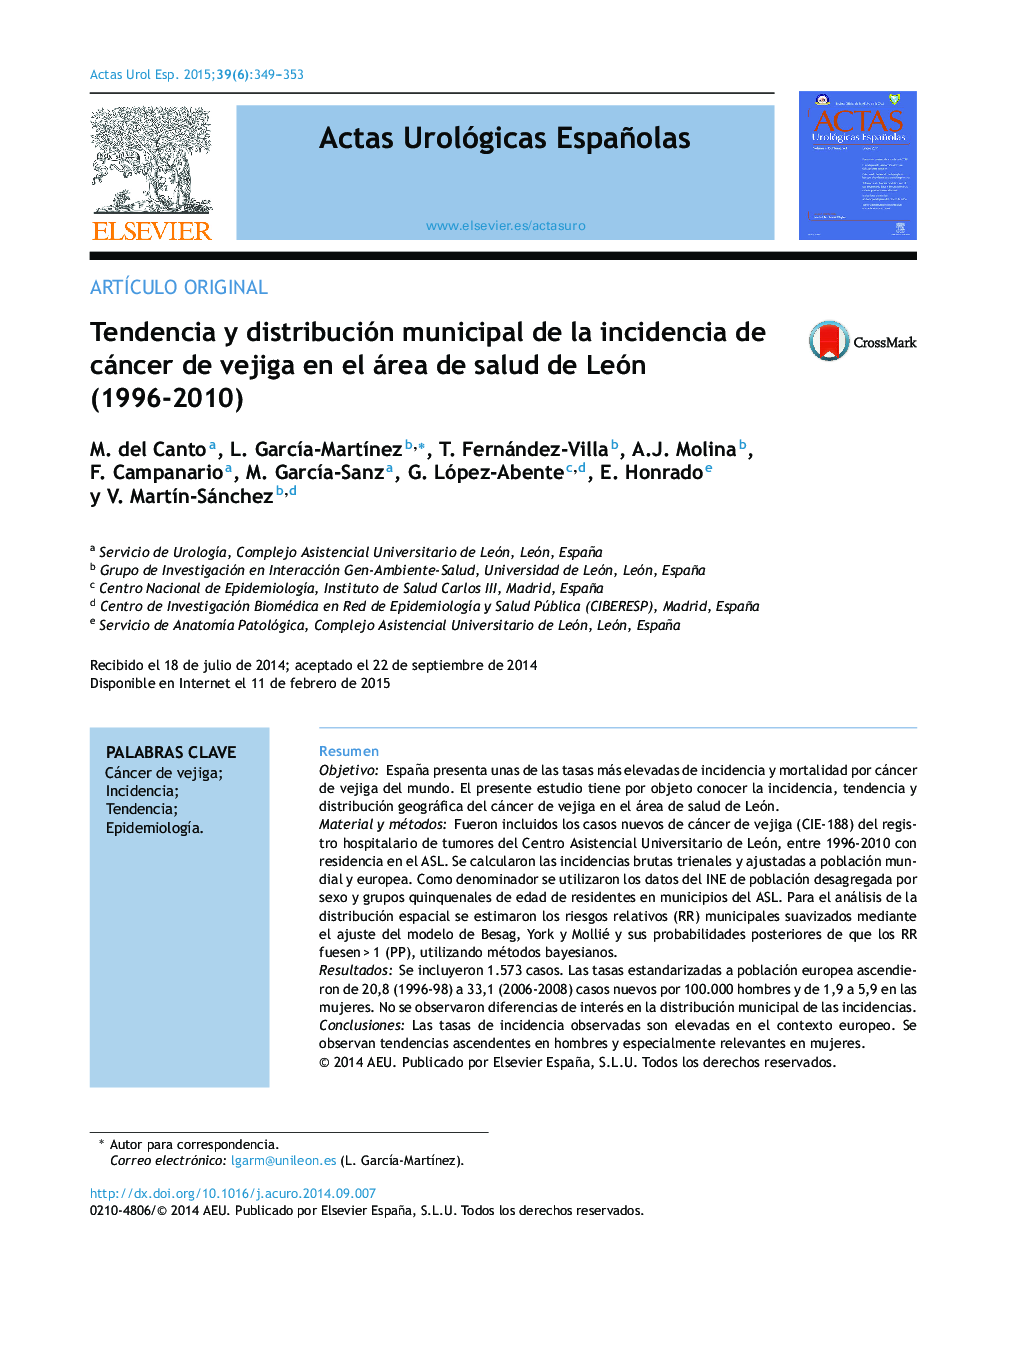 Tendencia y distribución municipal de la incidencia de cáncer de vejiga en el área de salud de León (1996-2010)